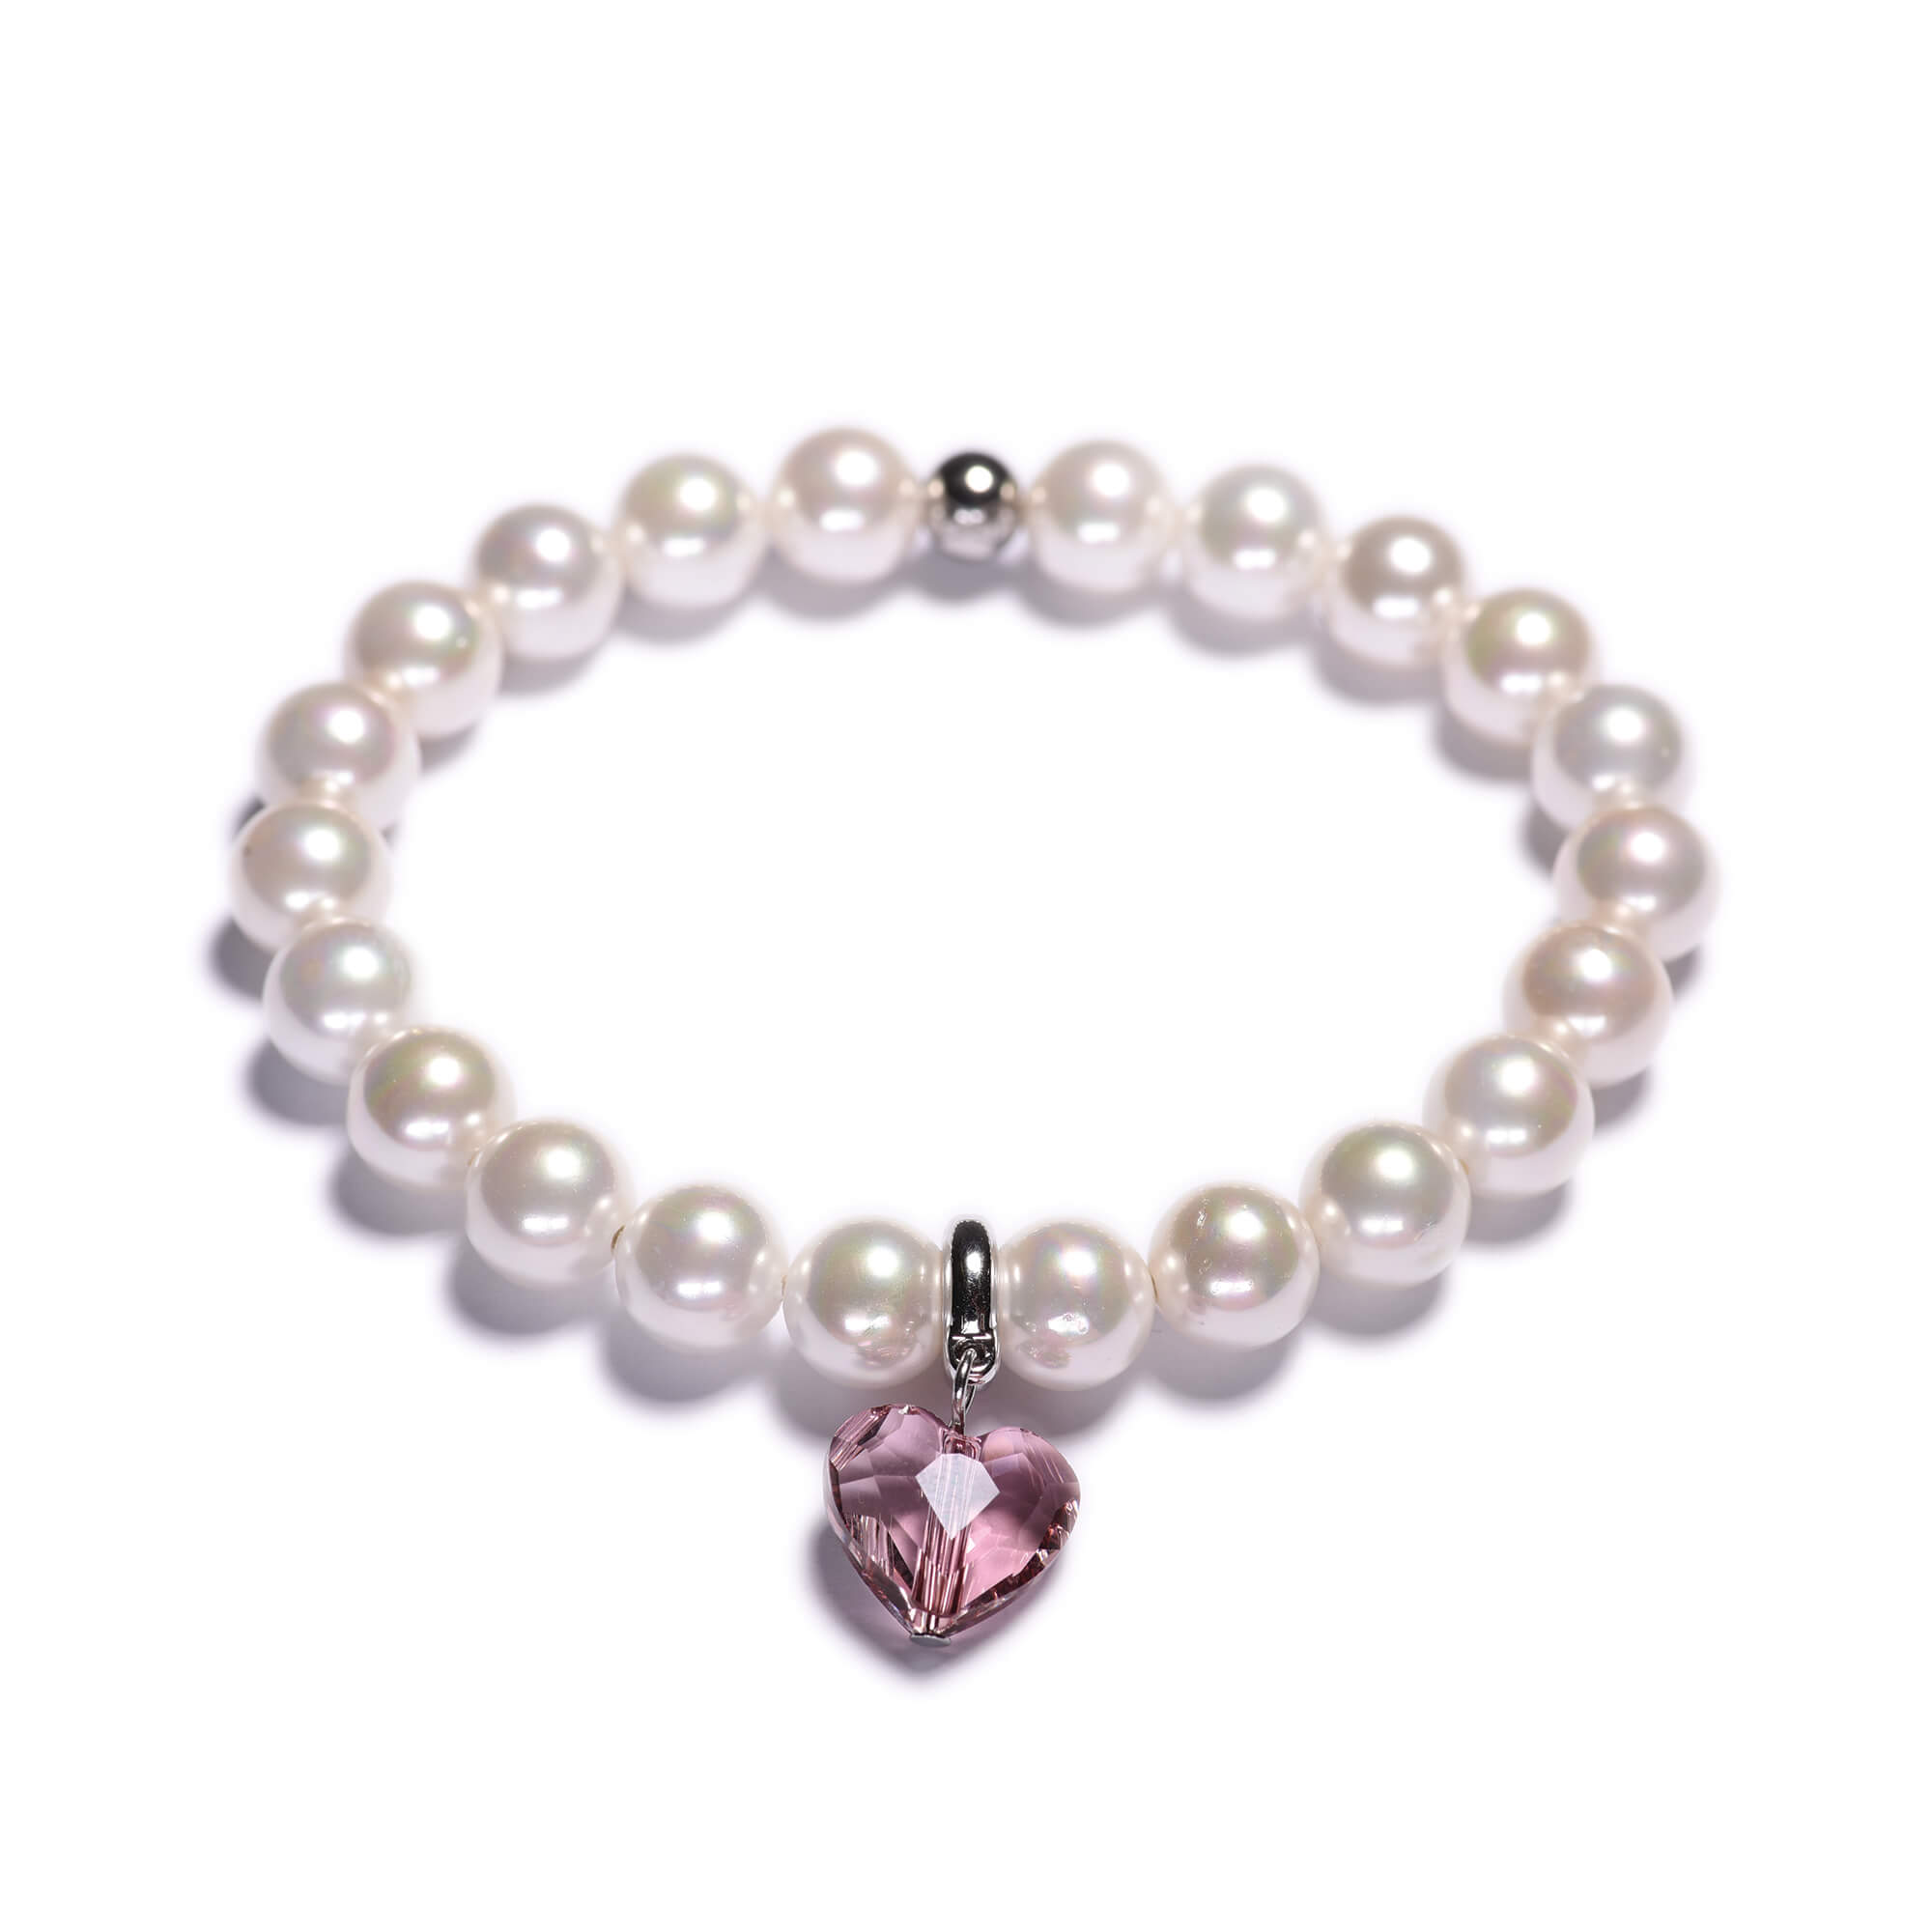 Dámský perlový náramek - bílé shell perly, Swarovski přívěsek ve tvaru srdce